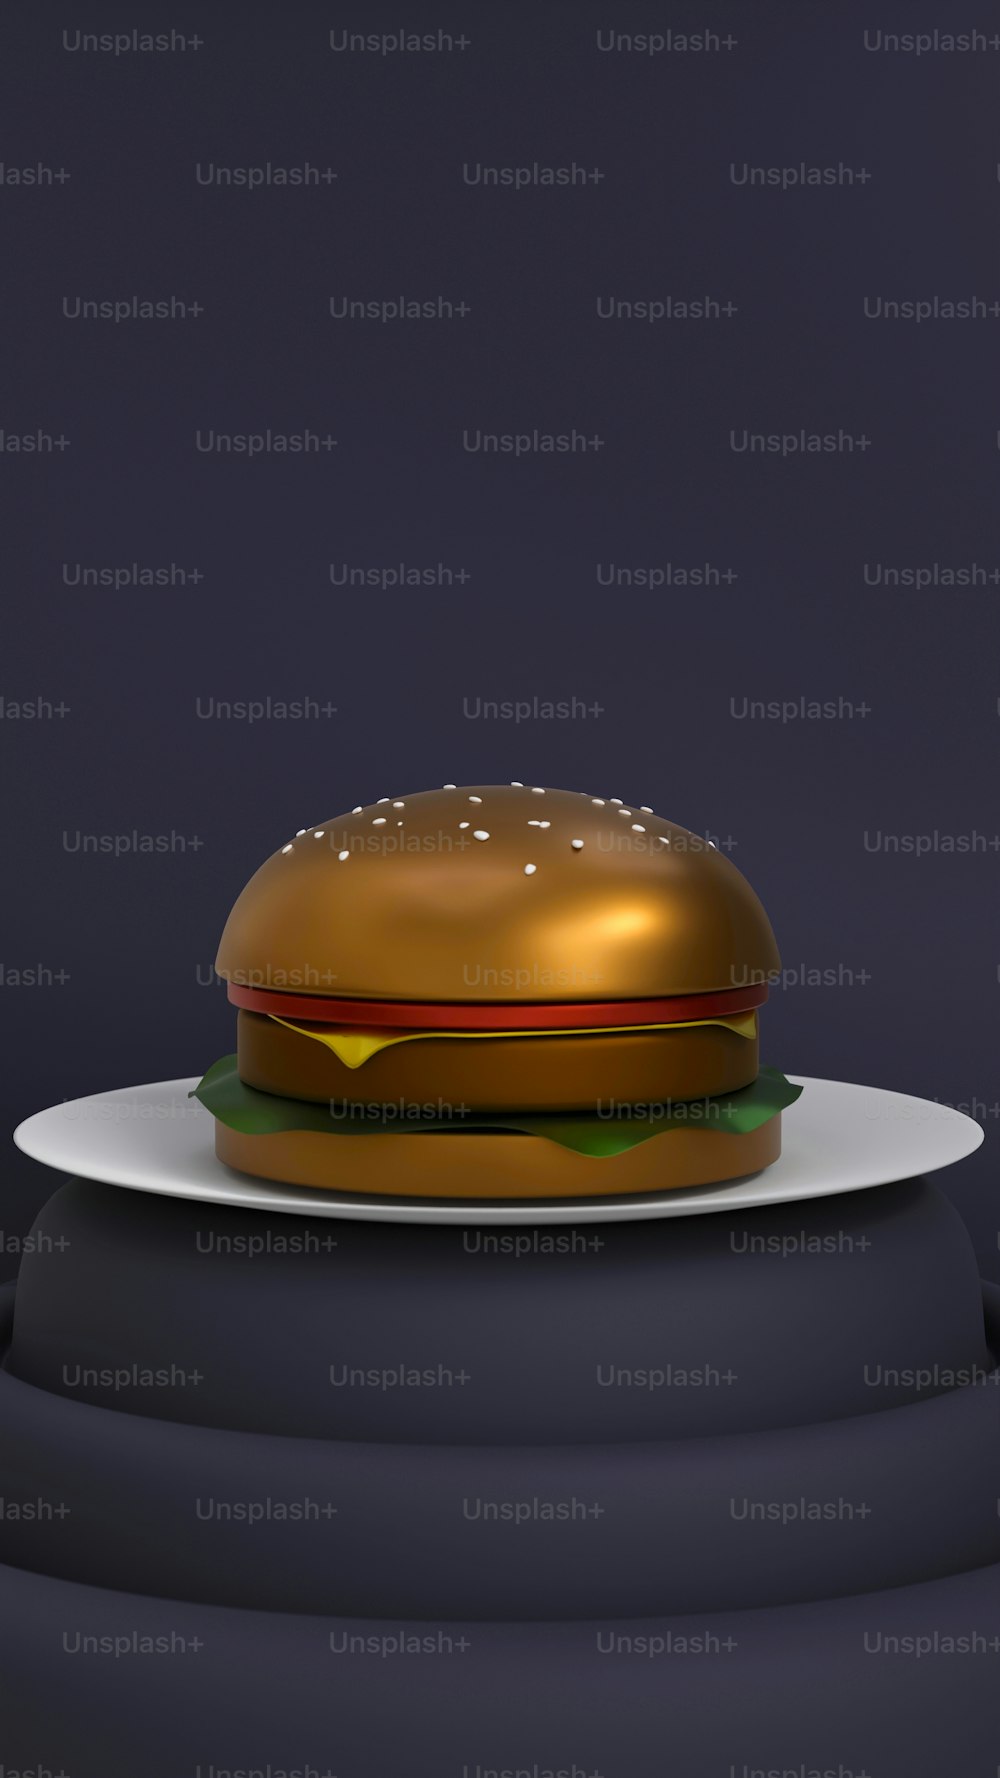 Ein goldener Hamburger sitzt auf einem weißen Teller